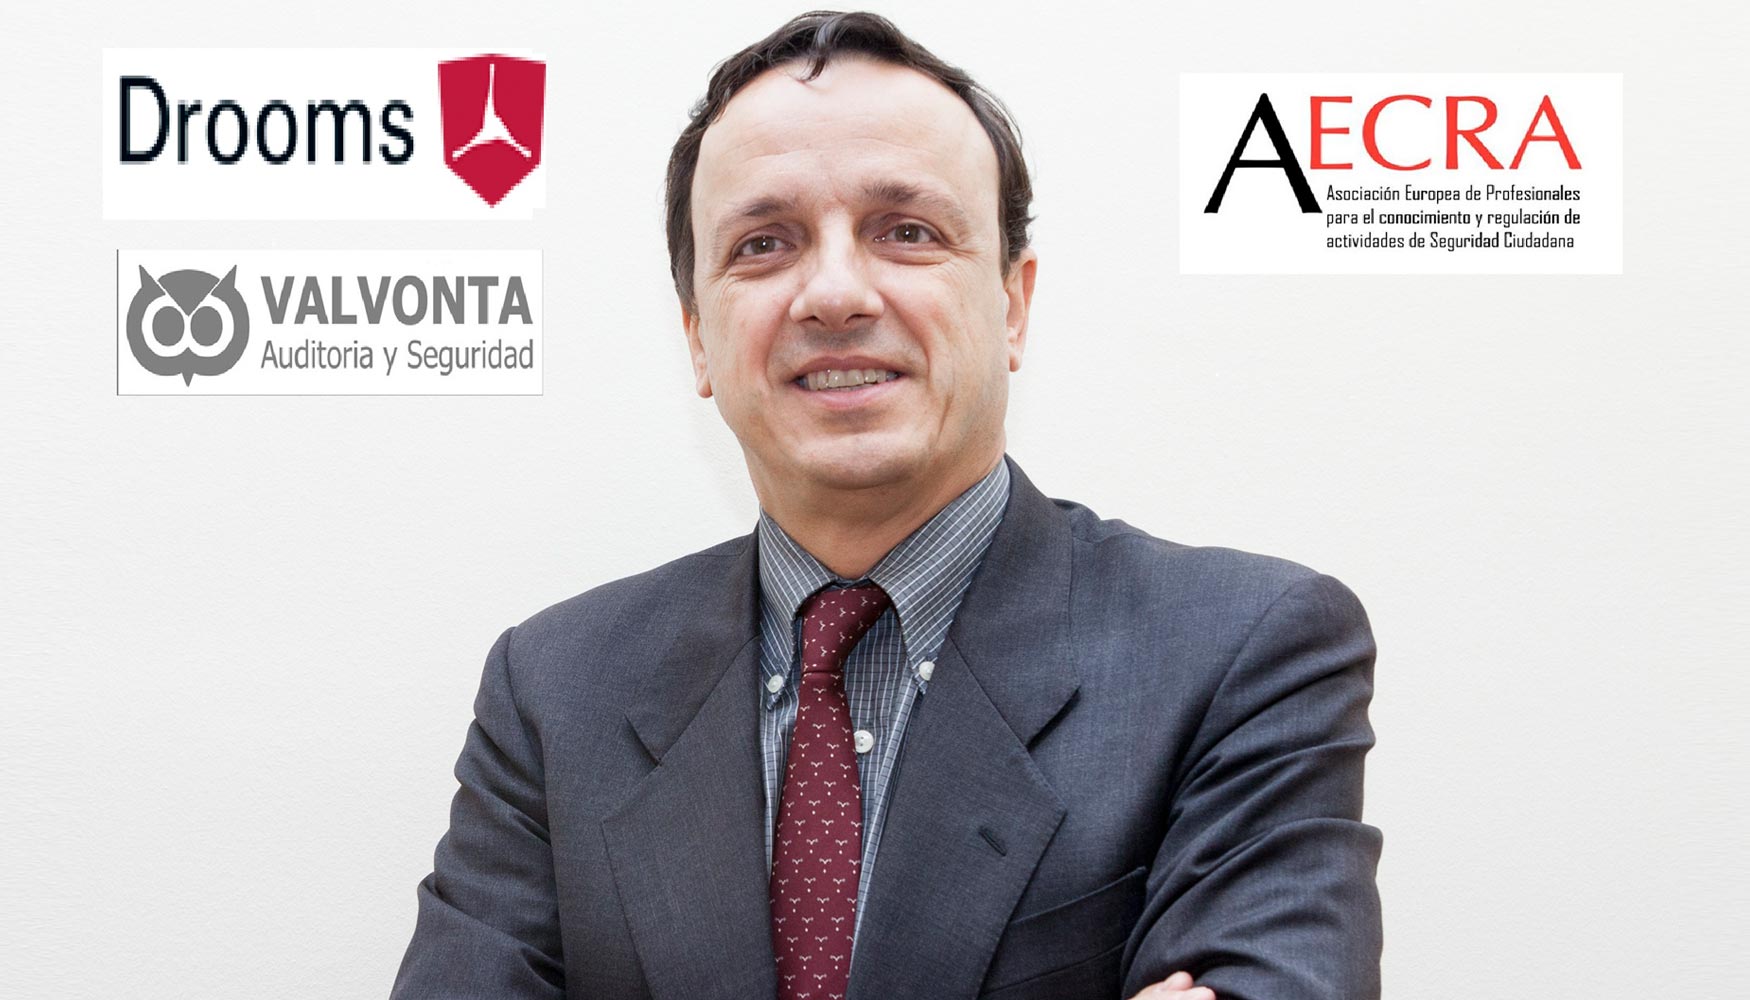 Juan Carlos Pizarro Garca, miembro de la Junta Directiva de Aecra, Tesorero y vocal de nuevas tecnologas de Aecra y Socio de Valvonta S.L...